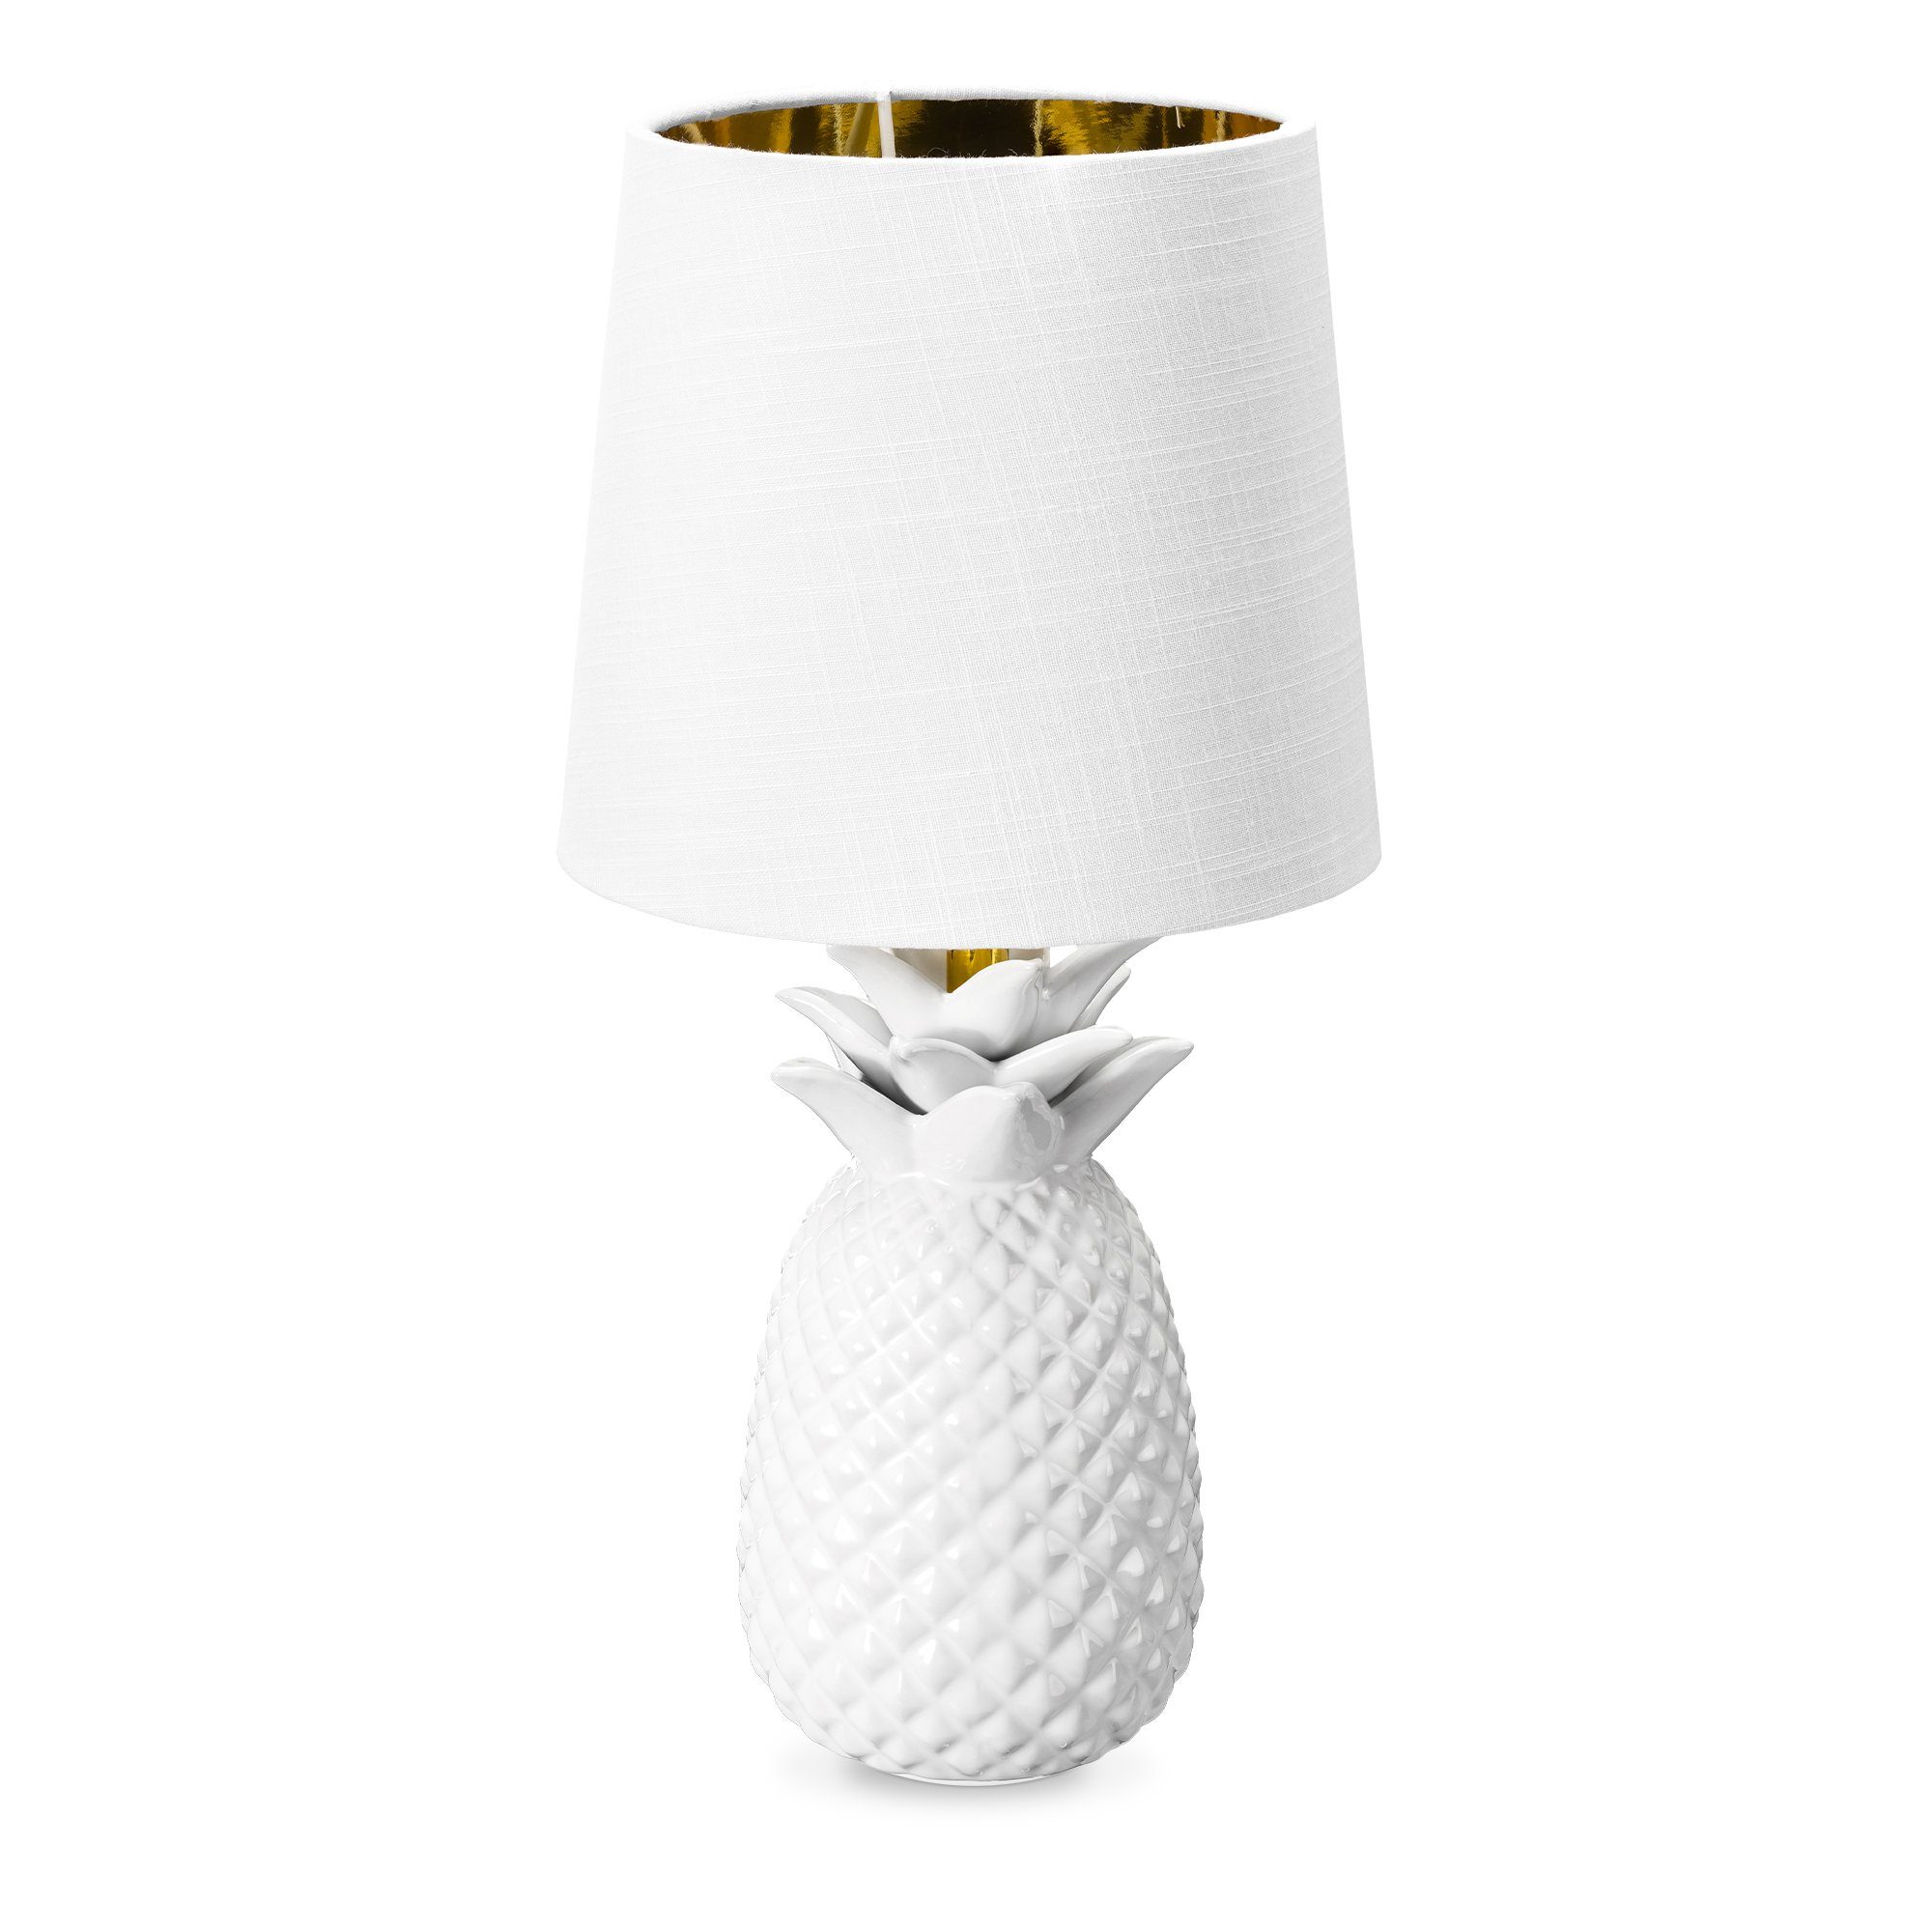 LED Textil Lampe weiß silber Schreib Nacht Tisch Leuchte Keramik Ananas Design 